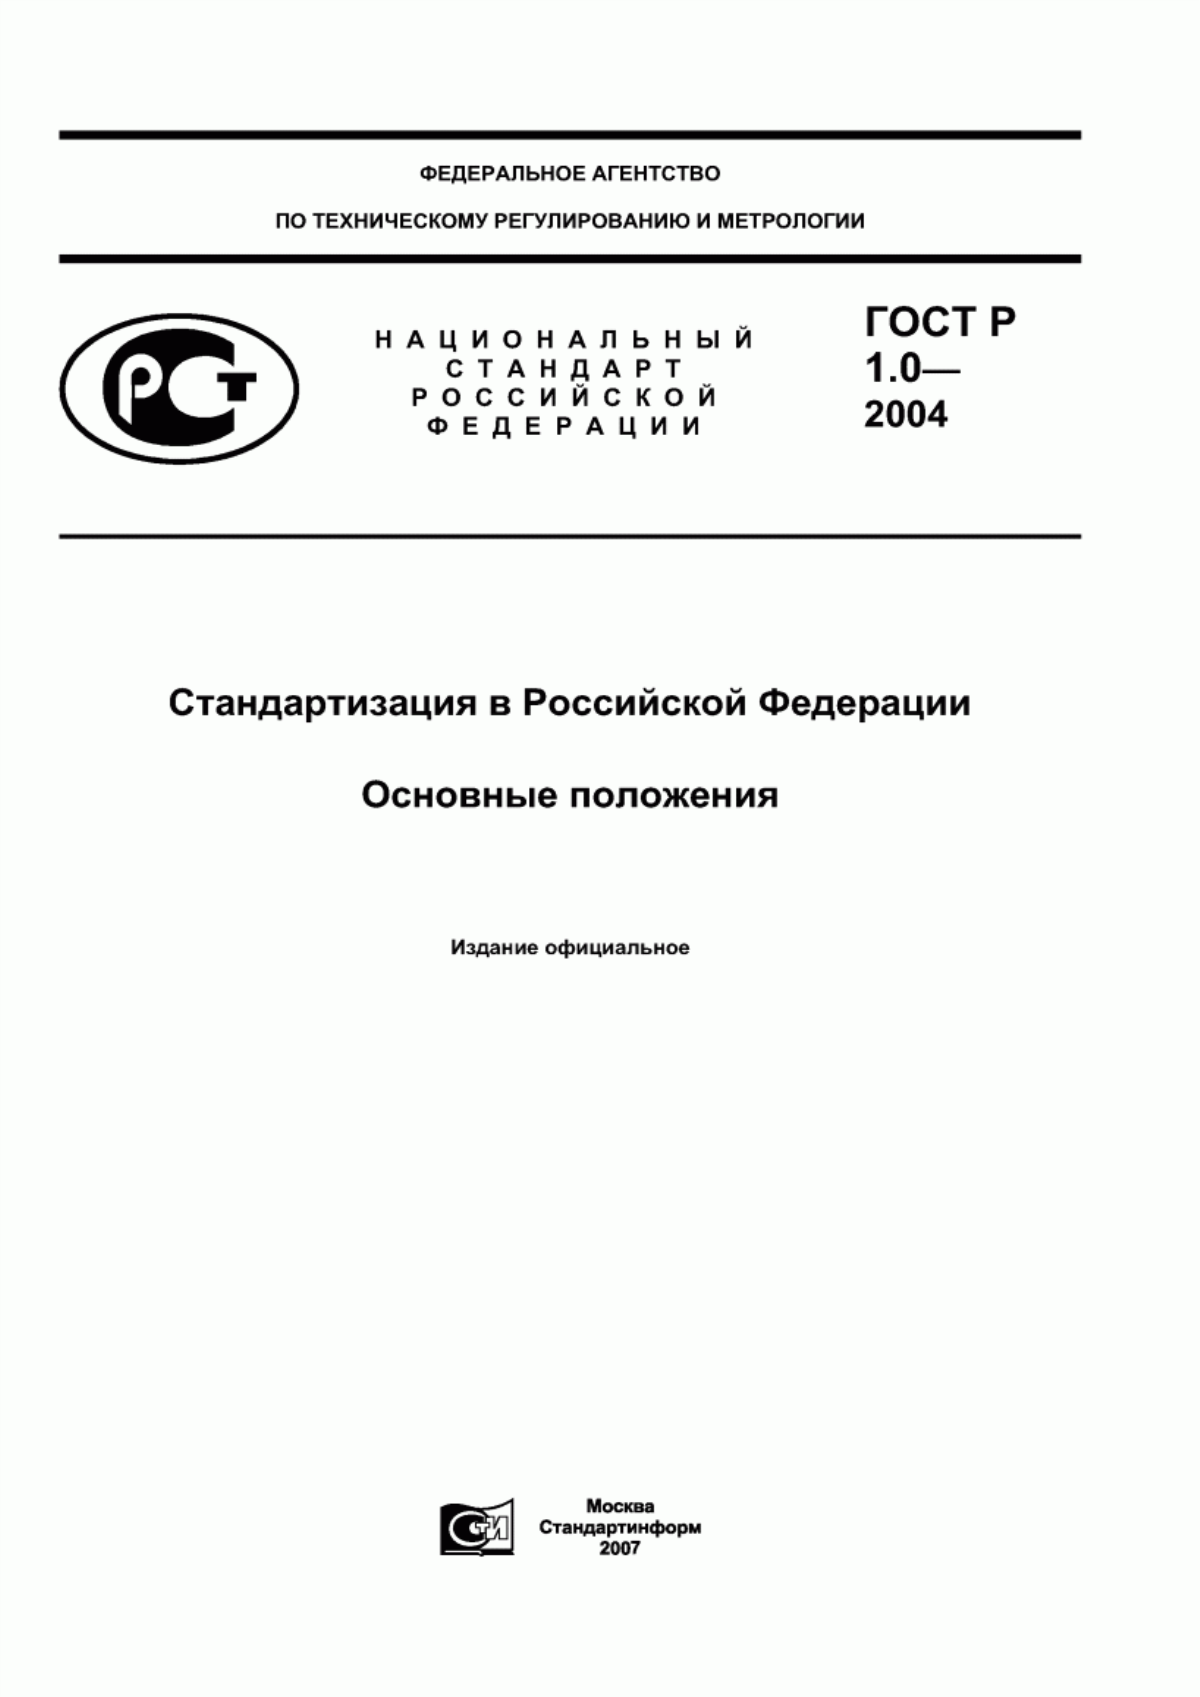 Национальный стандарт документ по стандартизации. ГОСТ 1.0-2004 стандартизация в Российской Федерации. ГОСТ Р 1.0-2004 стандартизация в Российской Федерации основные положения. ГОСТ Р 1.0-2012 стандартизация в Российской Федерации. ГОСТ Р 1.0-2004 3..